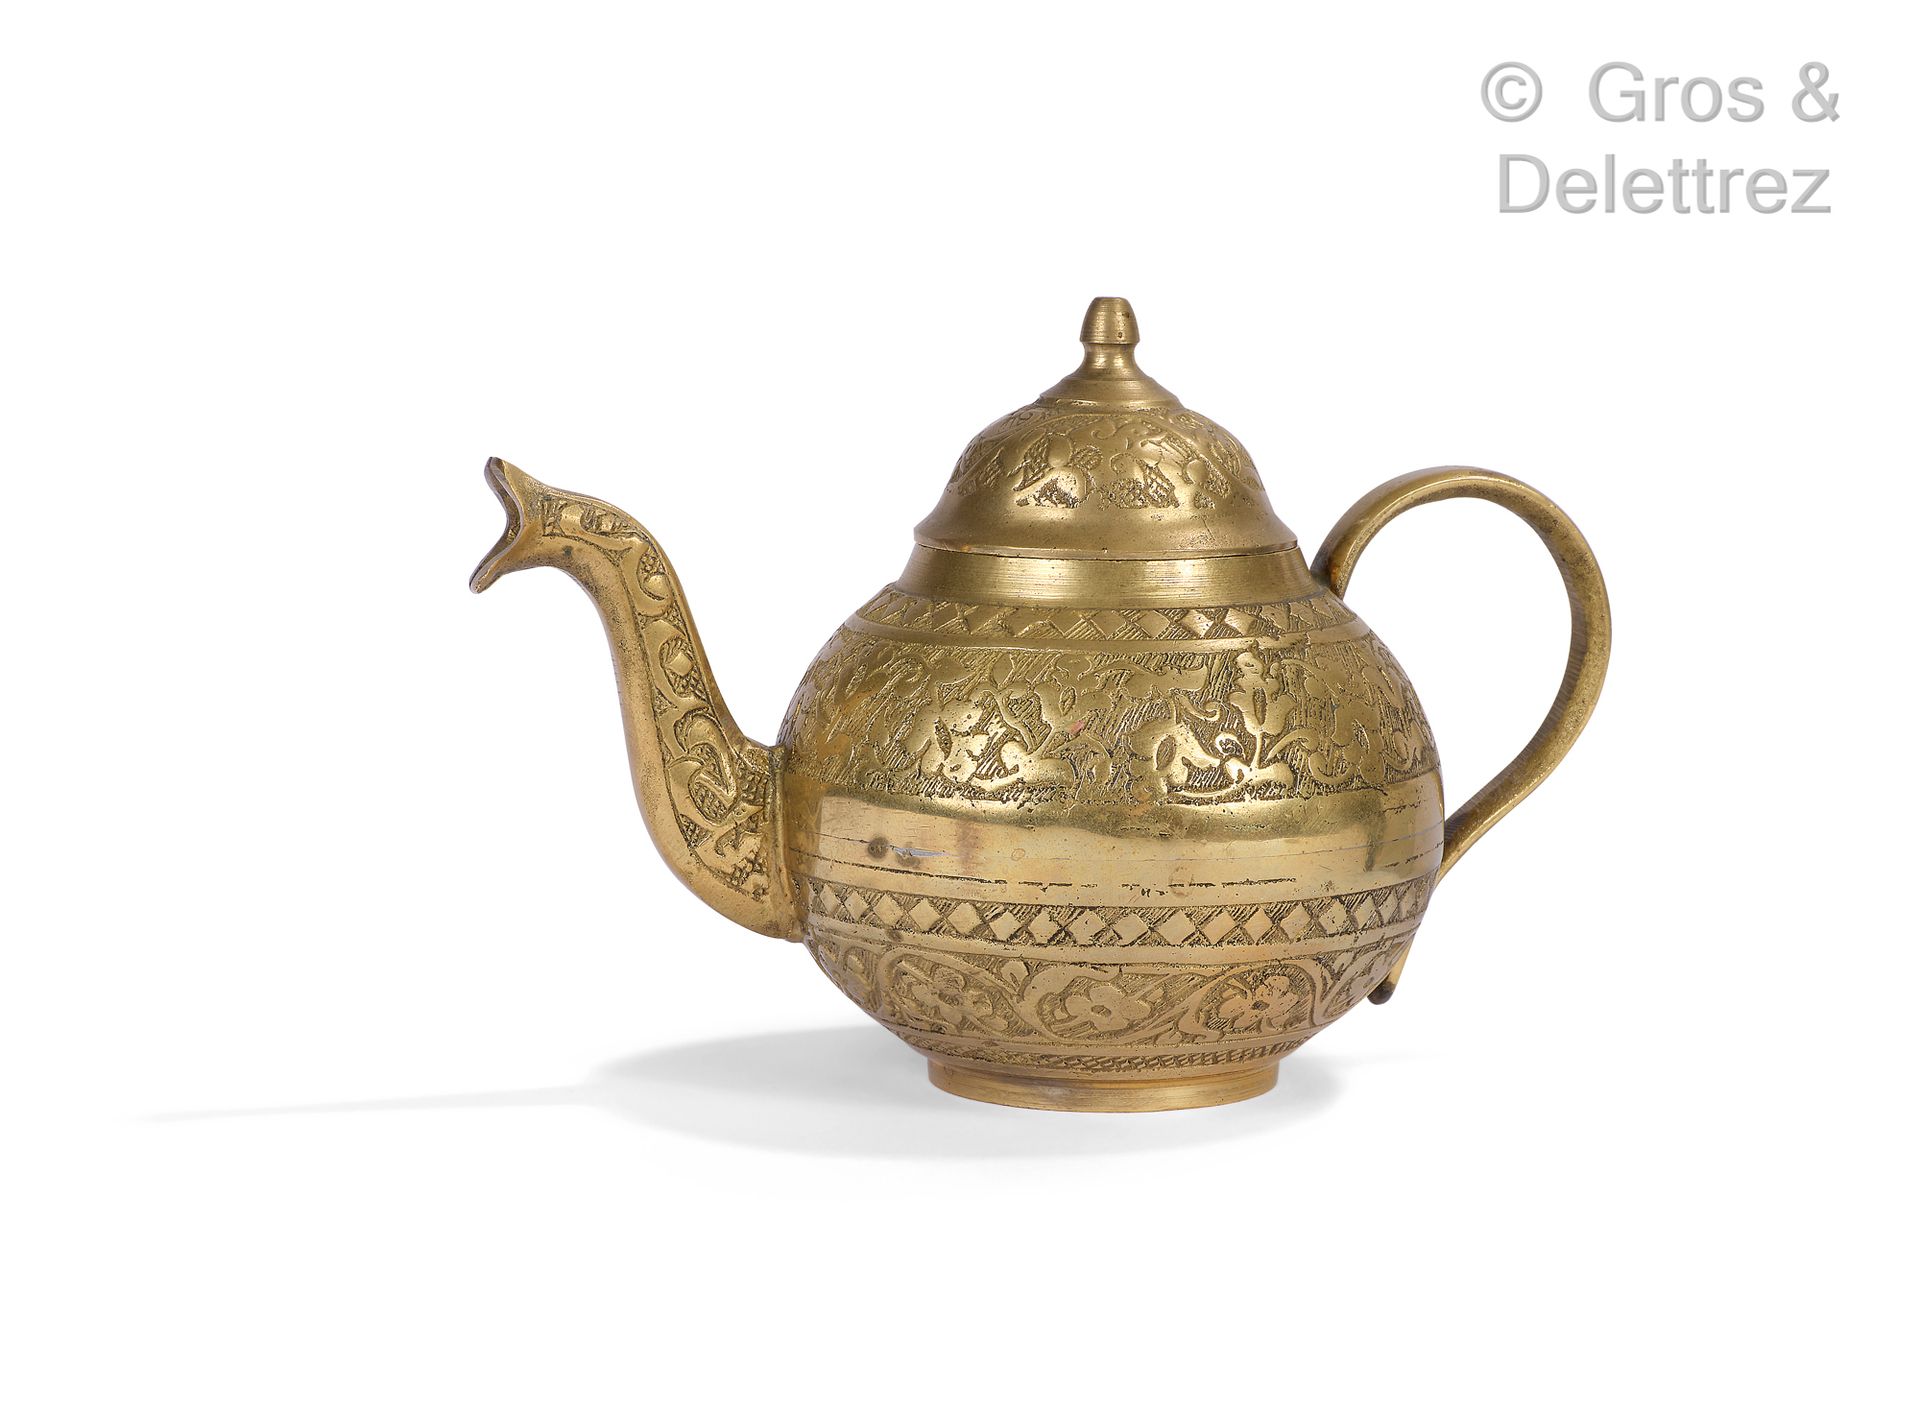 Null 拍品由一个镀银的带字的柱形花瓶，一个有不同铜锈的青铜杯和一个青铜茶壶组成。

高度：18至12厘米